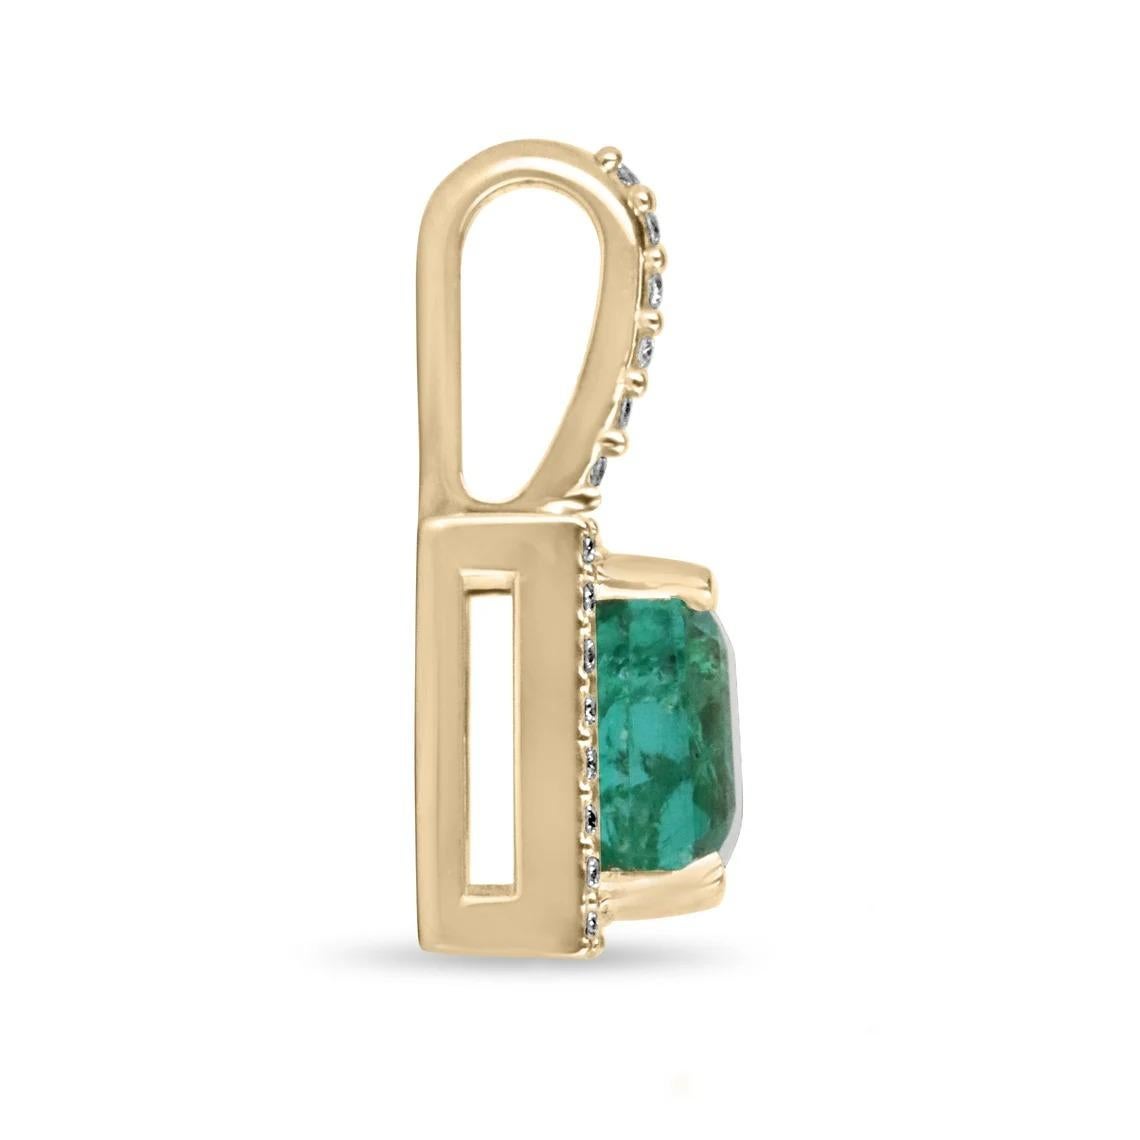 Ausgestellt ist eine atemberaubende Asscher cut Smaragd und Diamant Halo Halskette in 14K Gold. Der Anhänger ist mit einem mittelgrünen Smaragd im Asscher-Schliff verziert. Der Smaragd ist von zahlreichen natürlichen, runden, weißen Brillanten